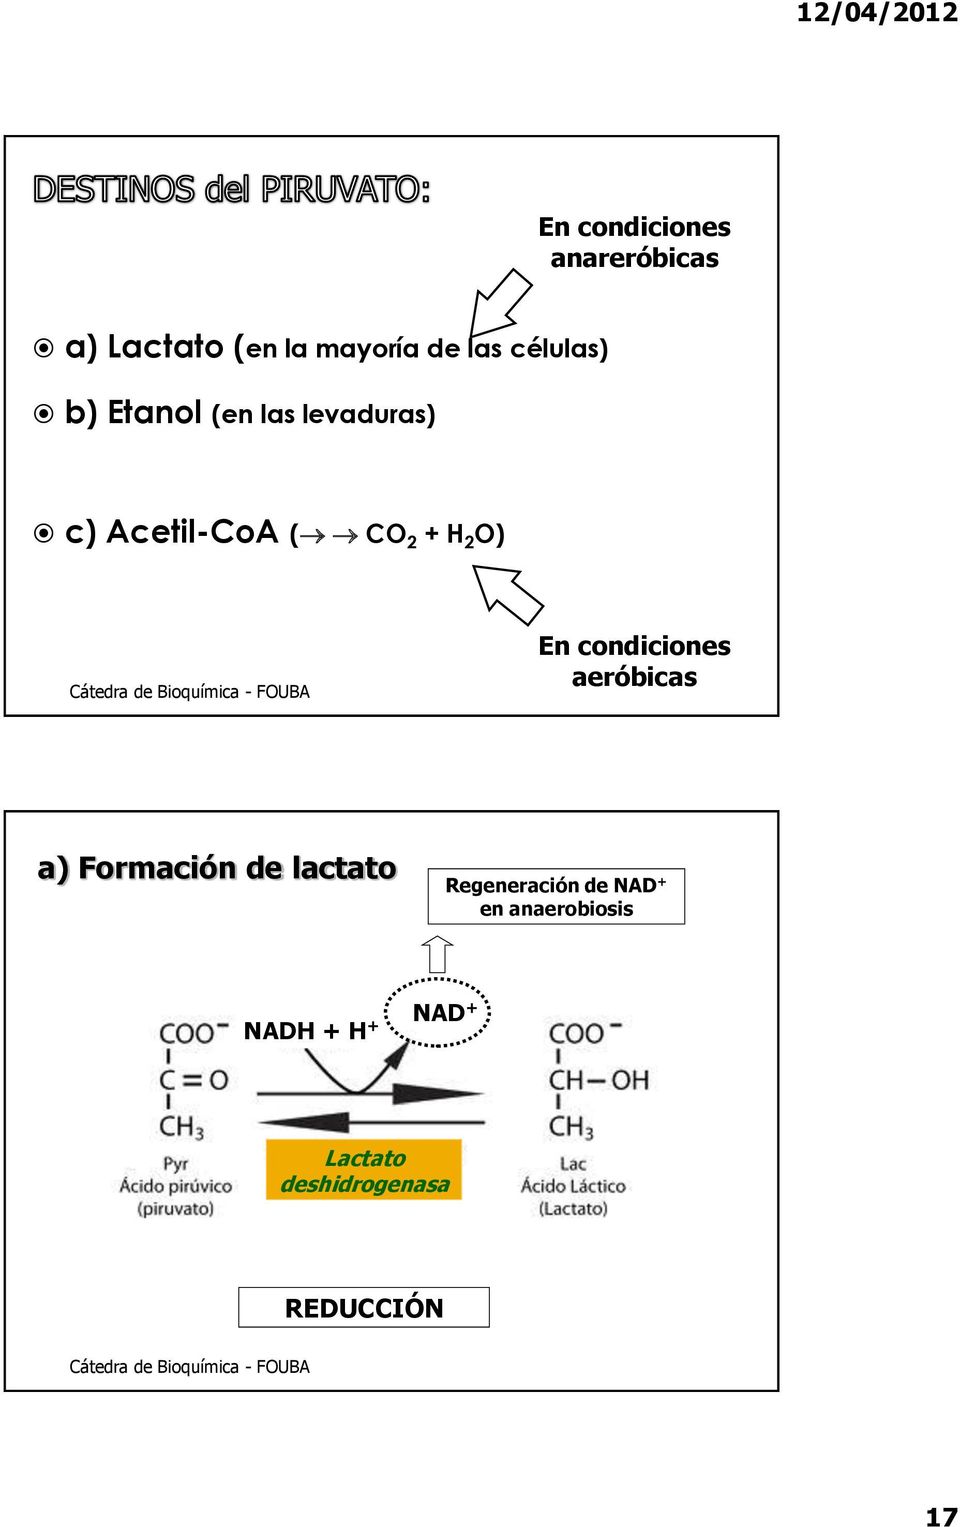 En condiciones aeróbicas a) Formación de lactato Regeneración de NAD